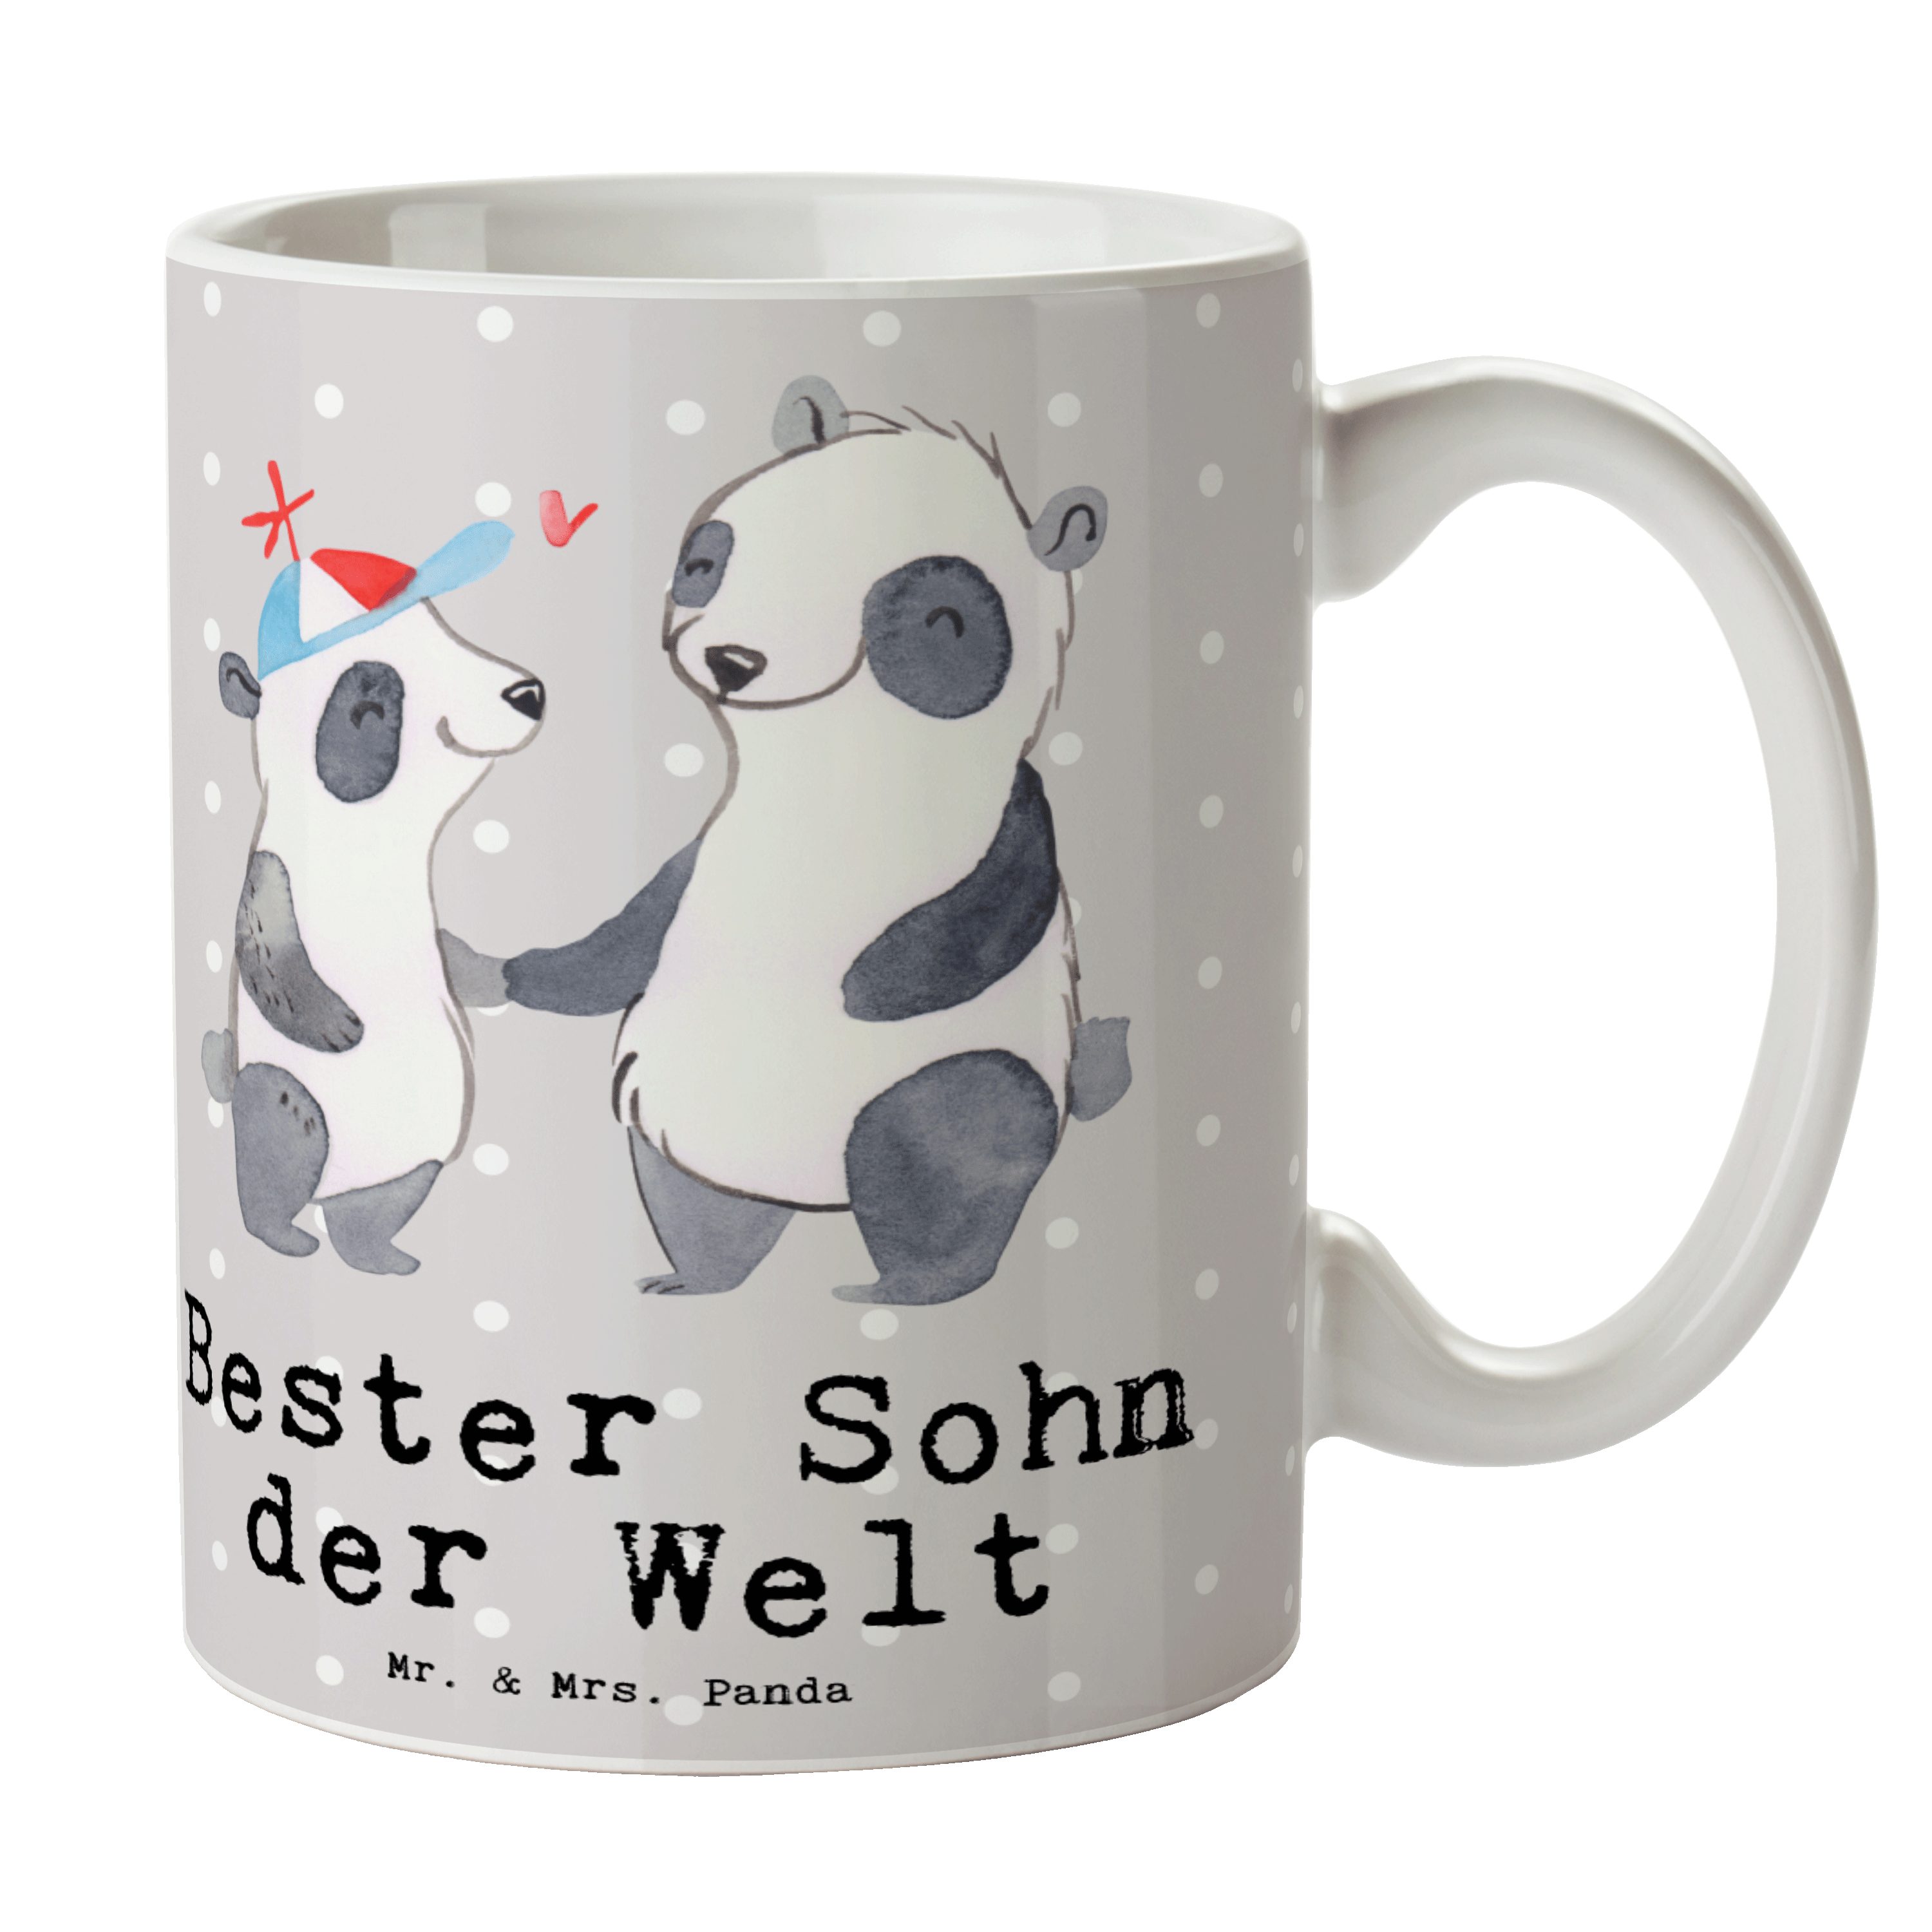 Mr. & Mrs. Panda Tasse Panda Bester Sohn der Welt - Grau Pastell - Geschenk, Geschenktipp, T, Keramik